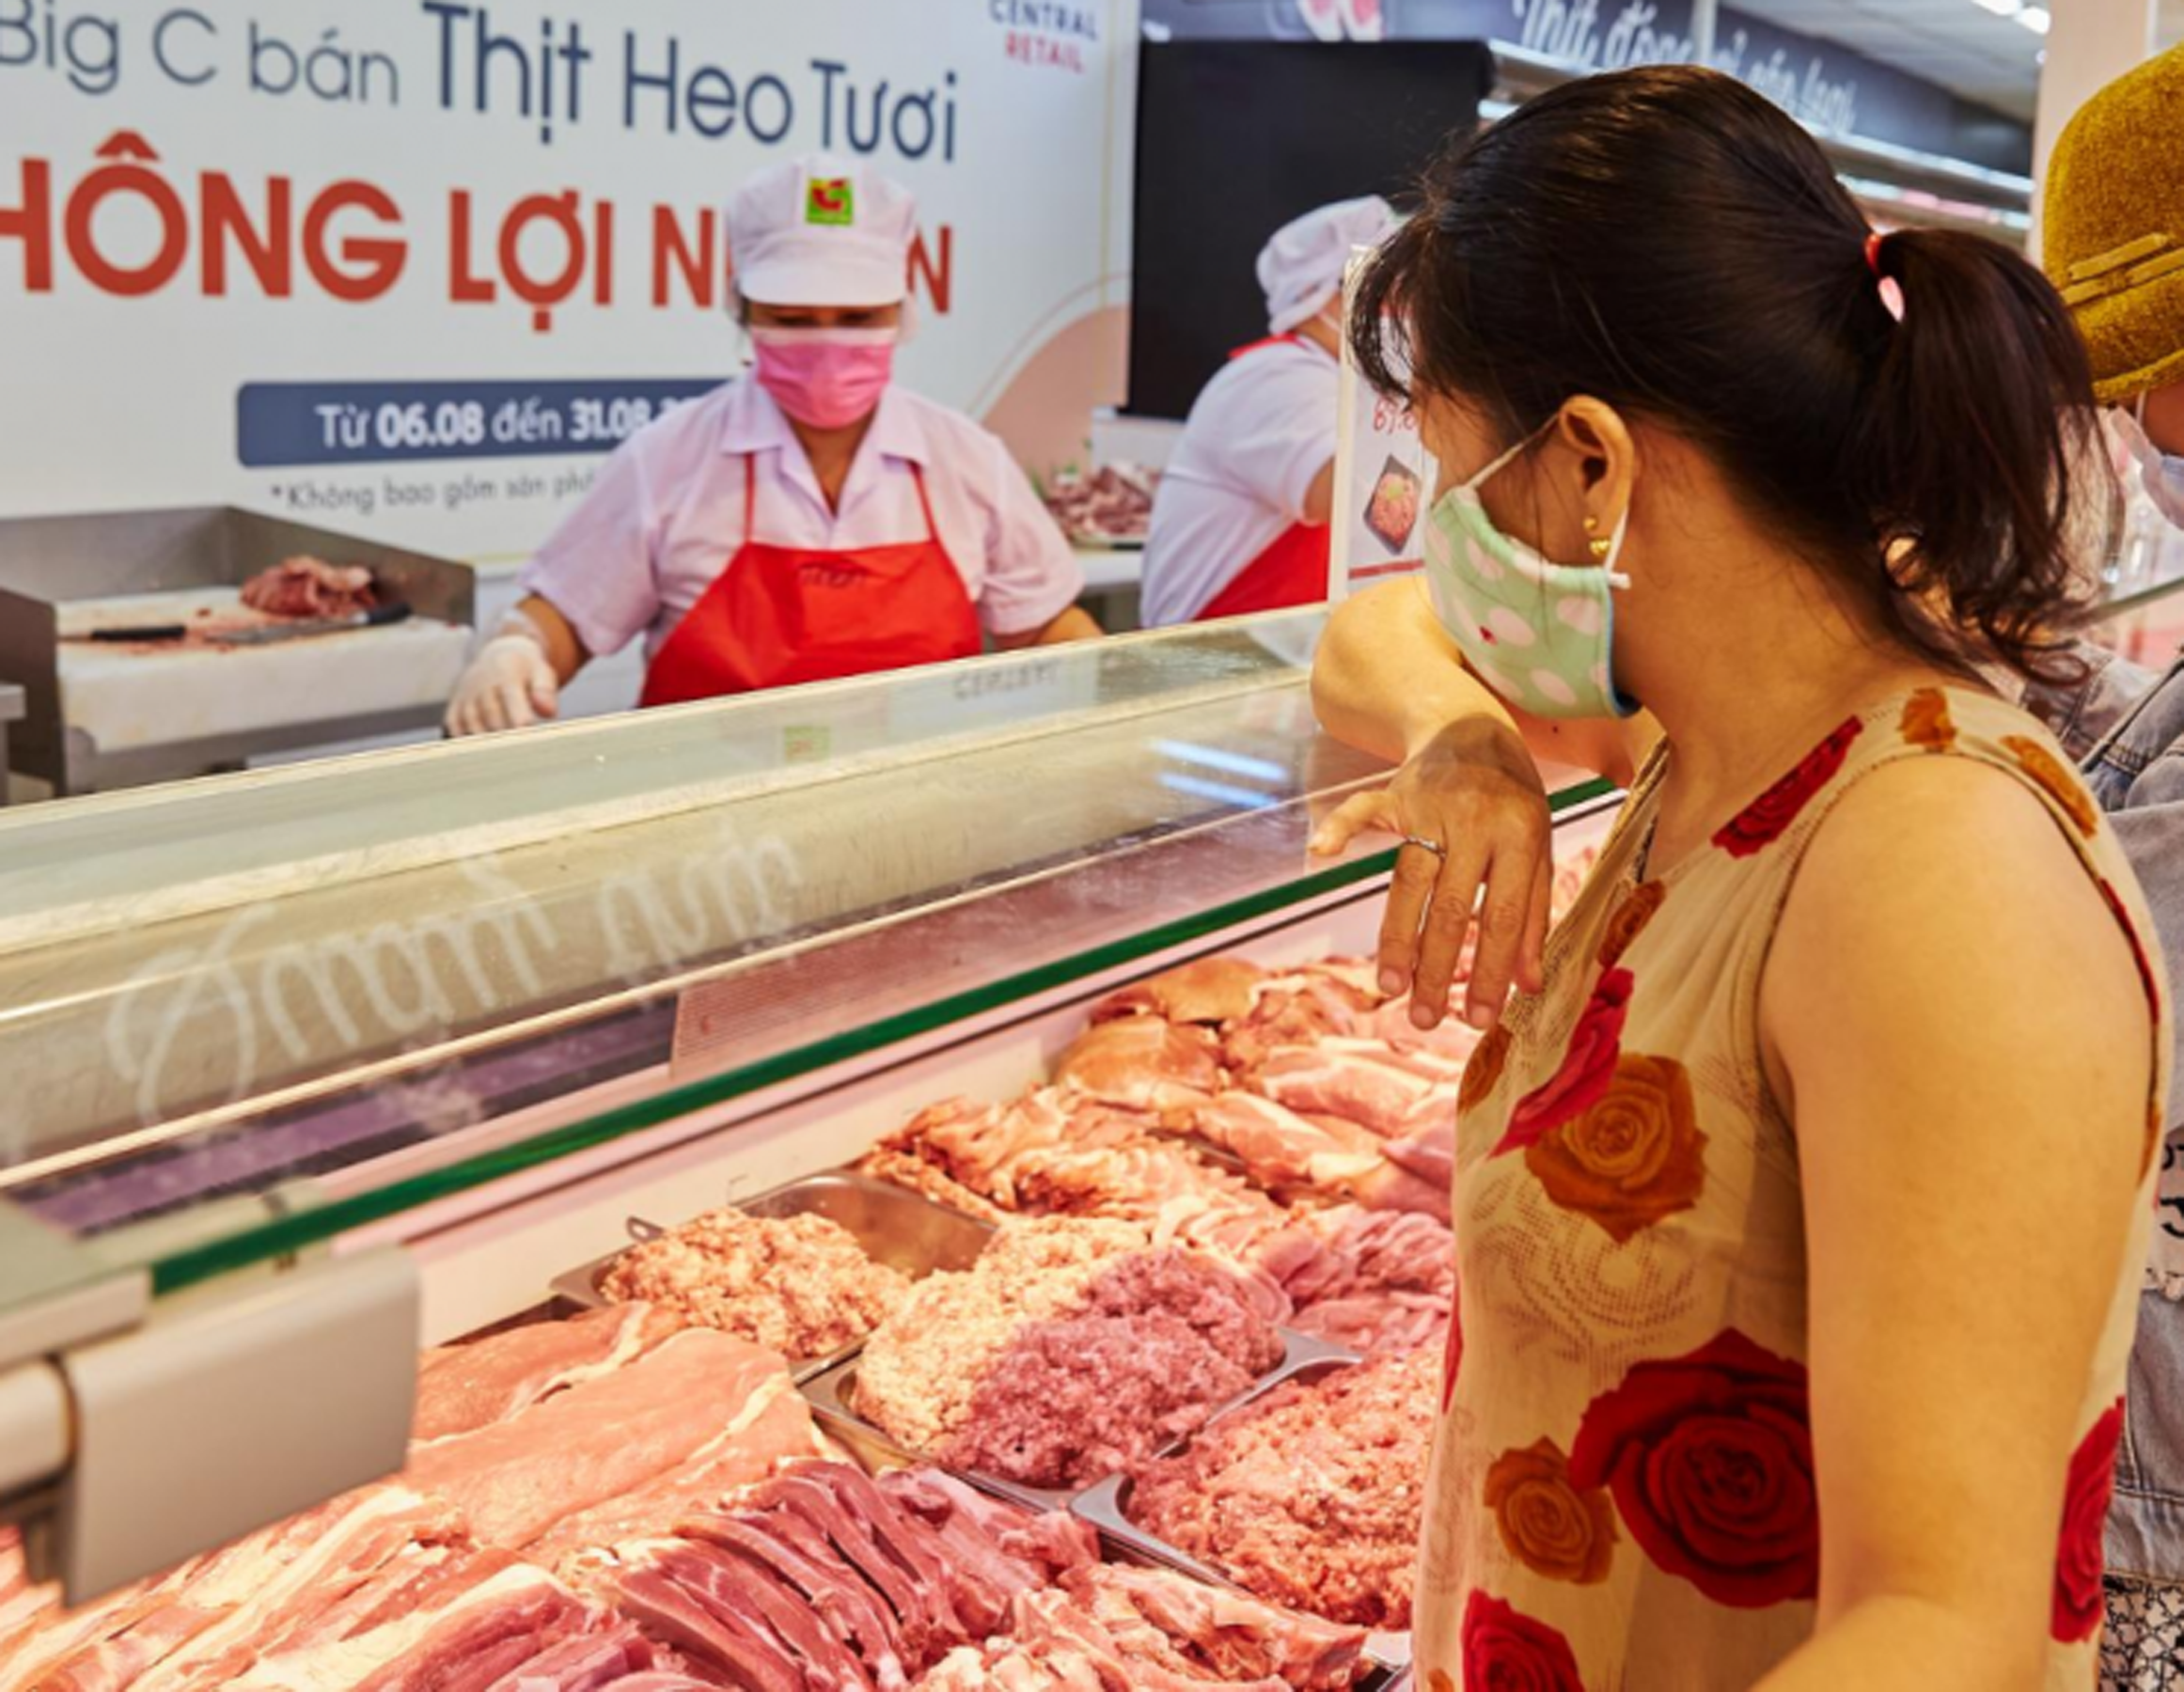 Ở các siêu thị, giá thịt vẫn bình ổn như trước đó, không thấy có sự điều chỉnh giá. Ảnh: Thanh Phúc